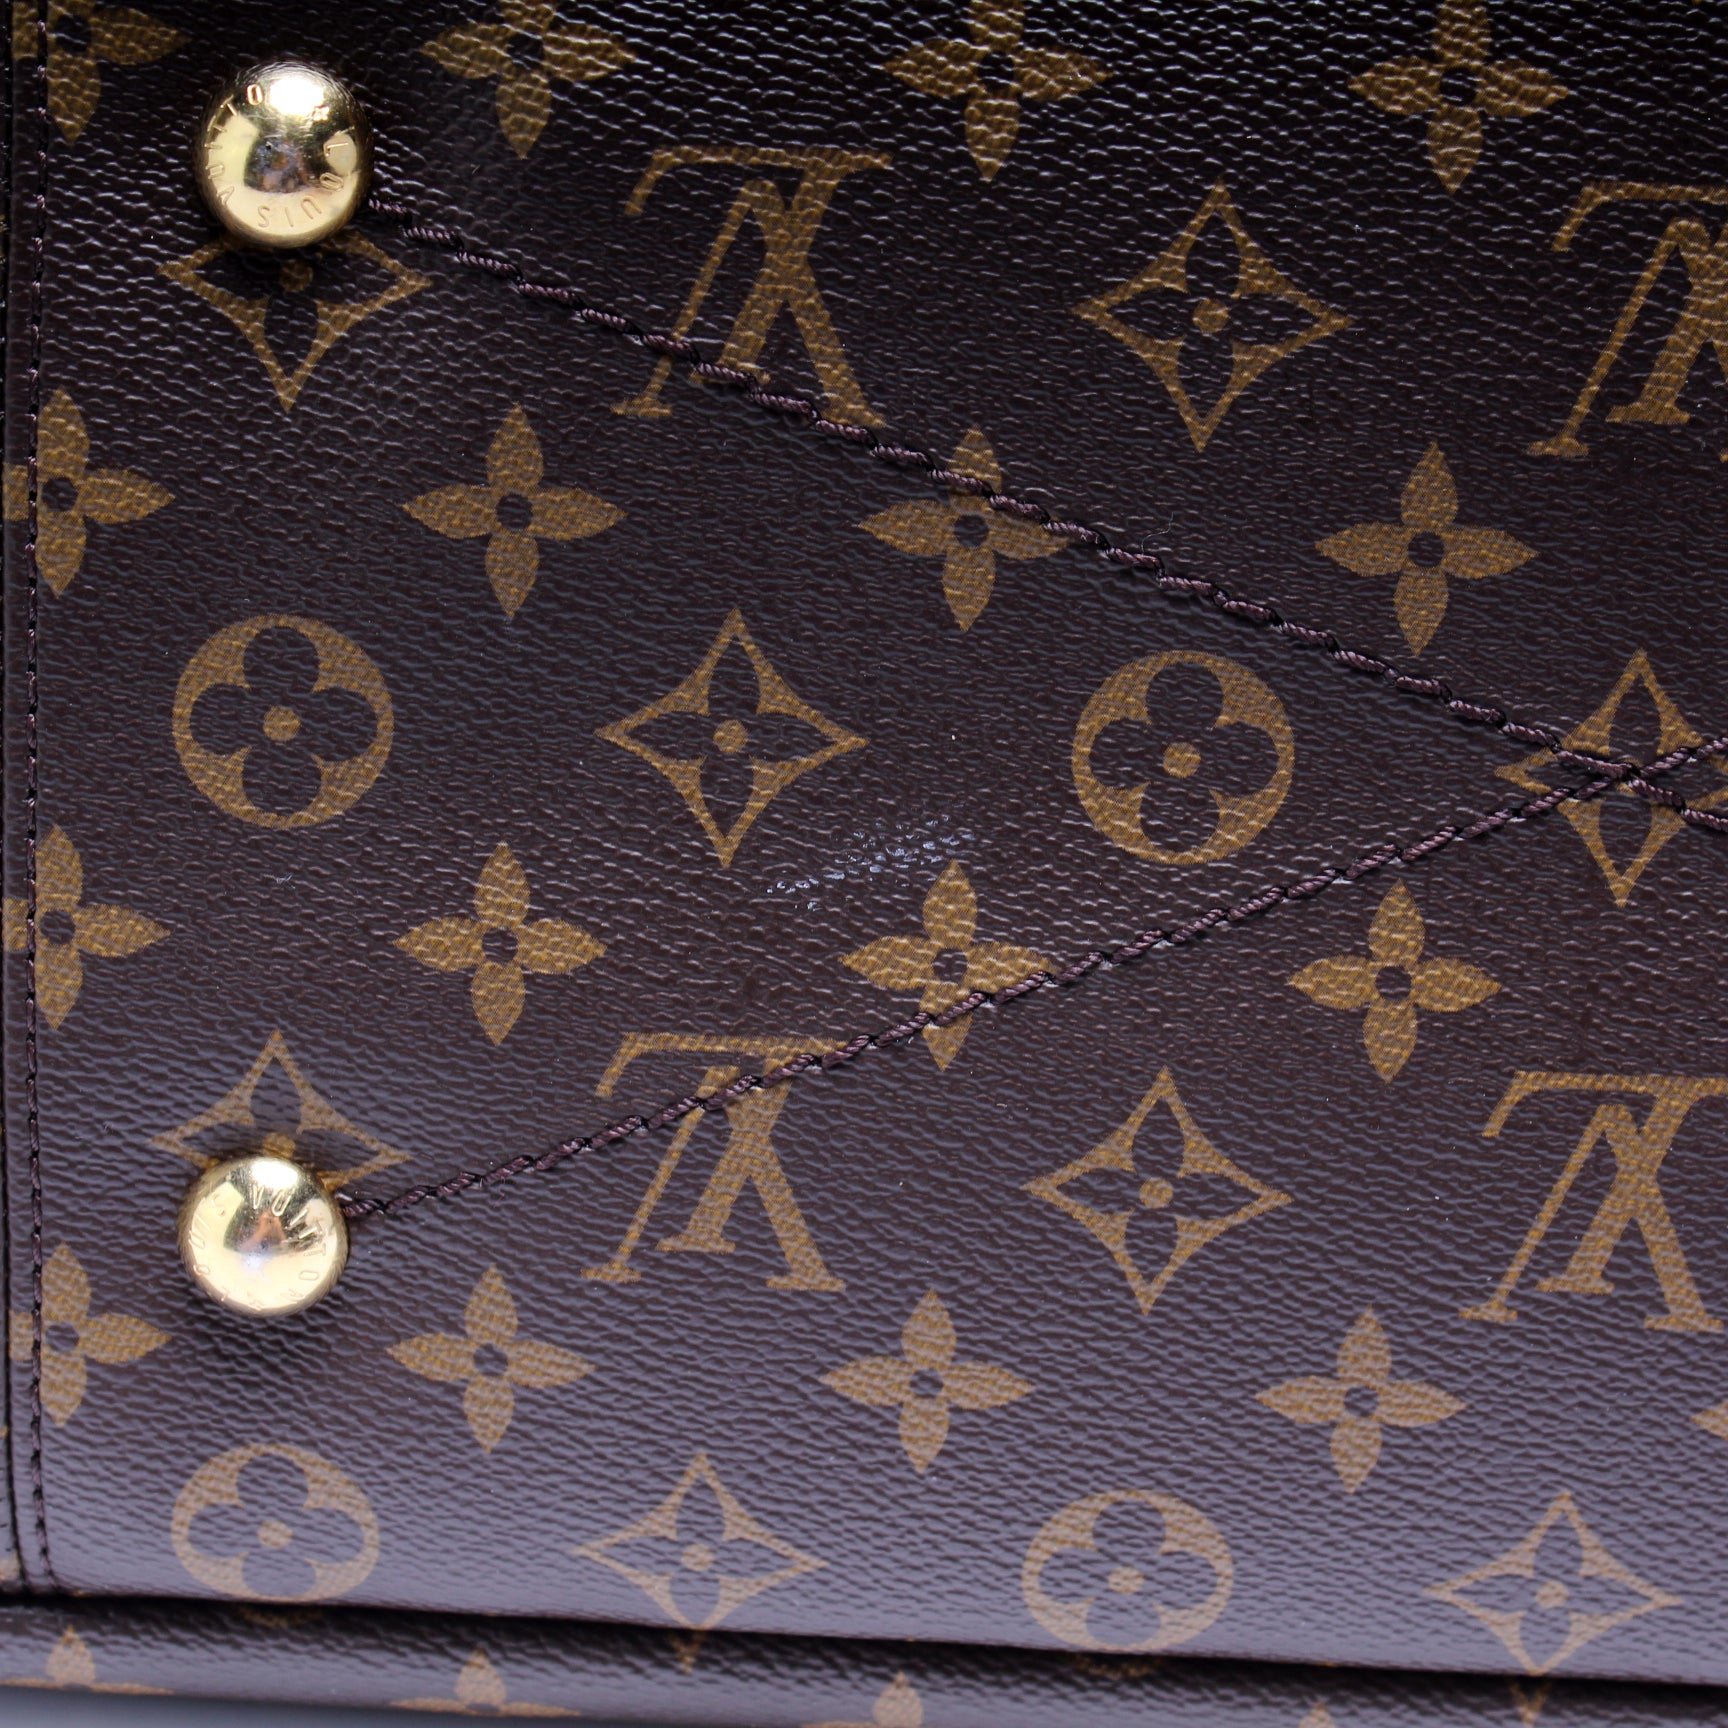 Louis Vuitton Artsy Handbag 393097